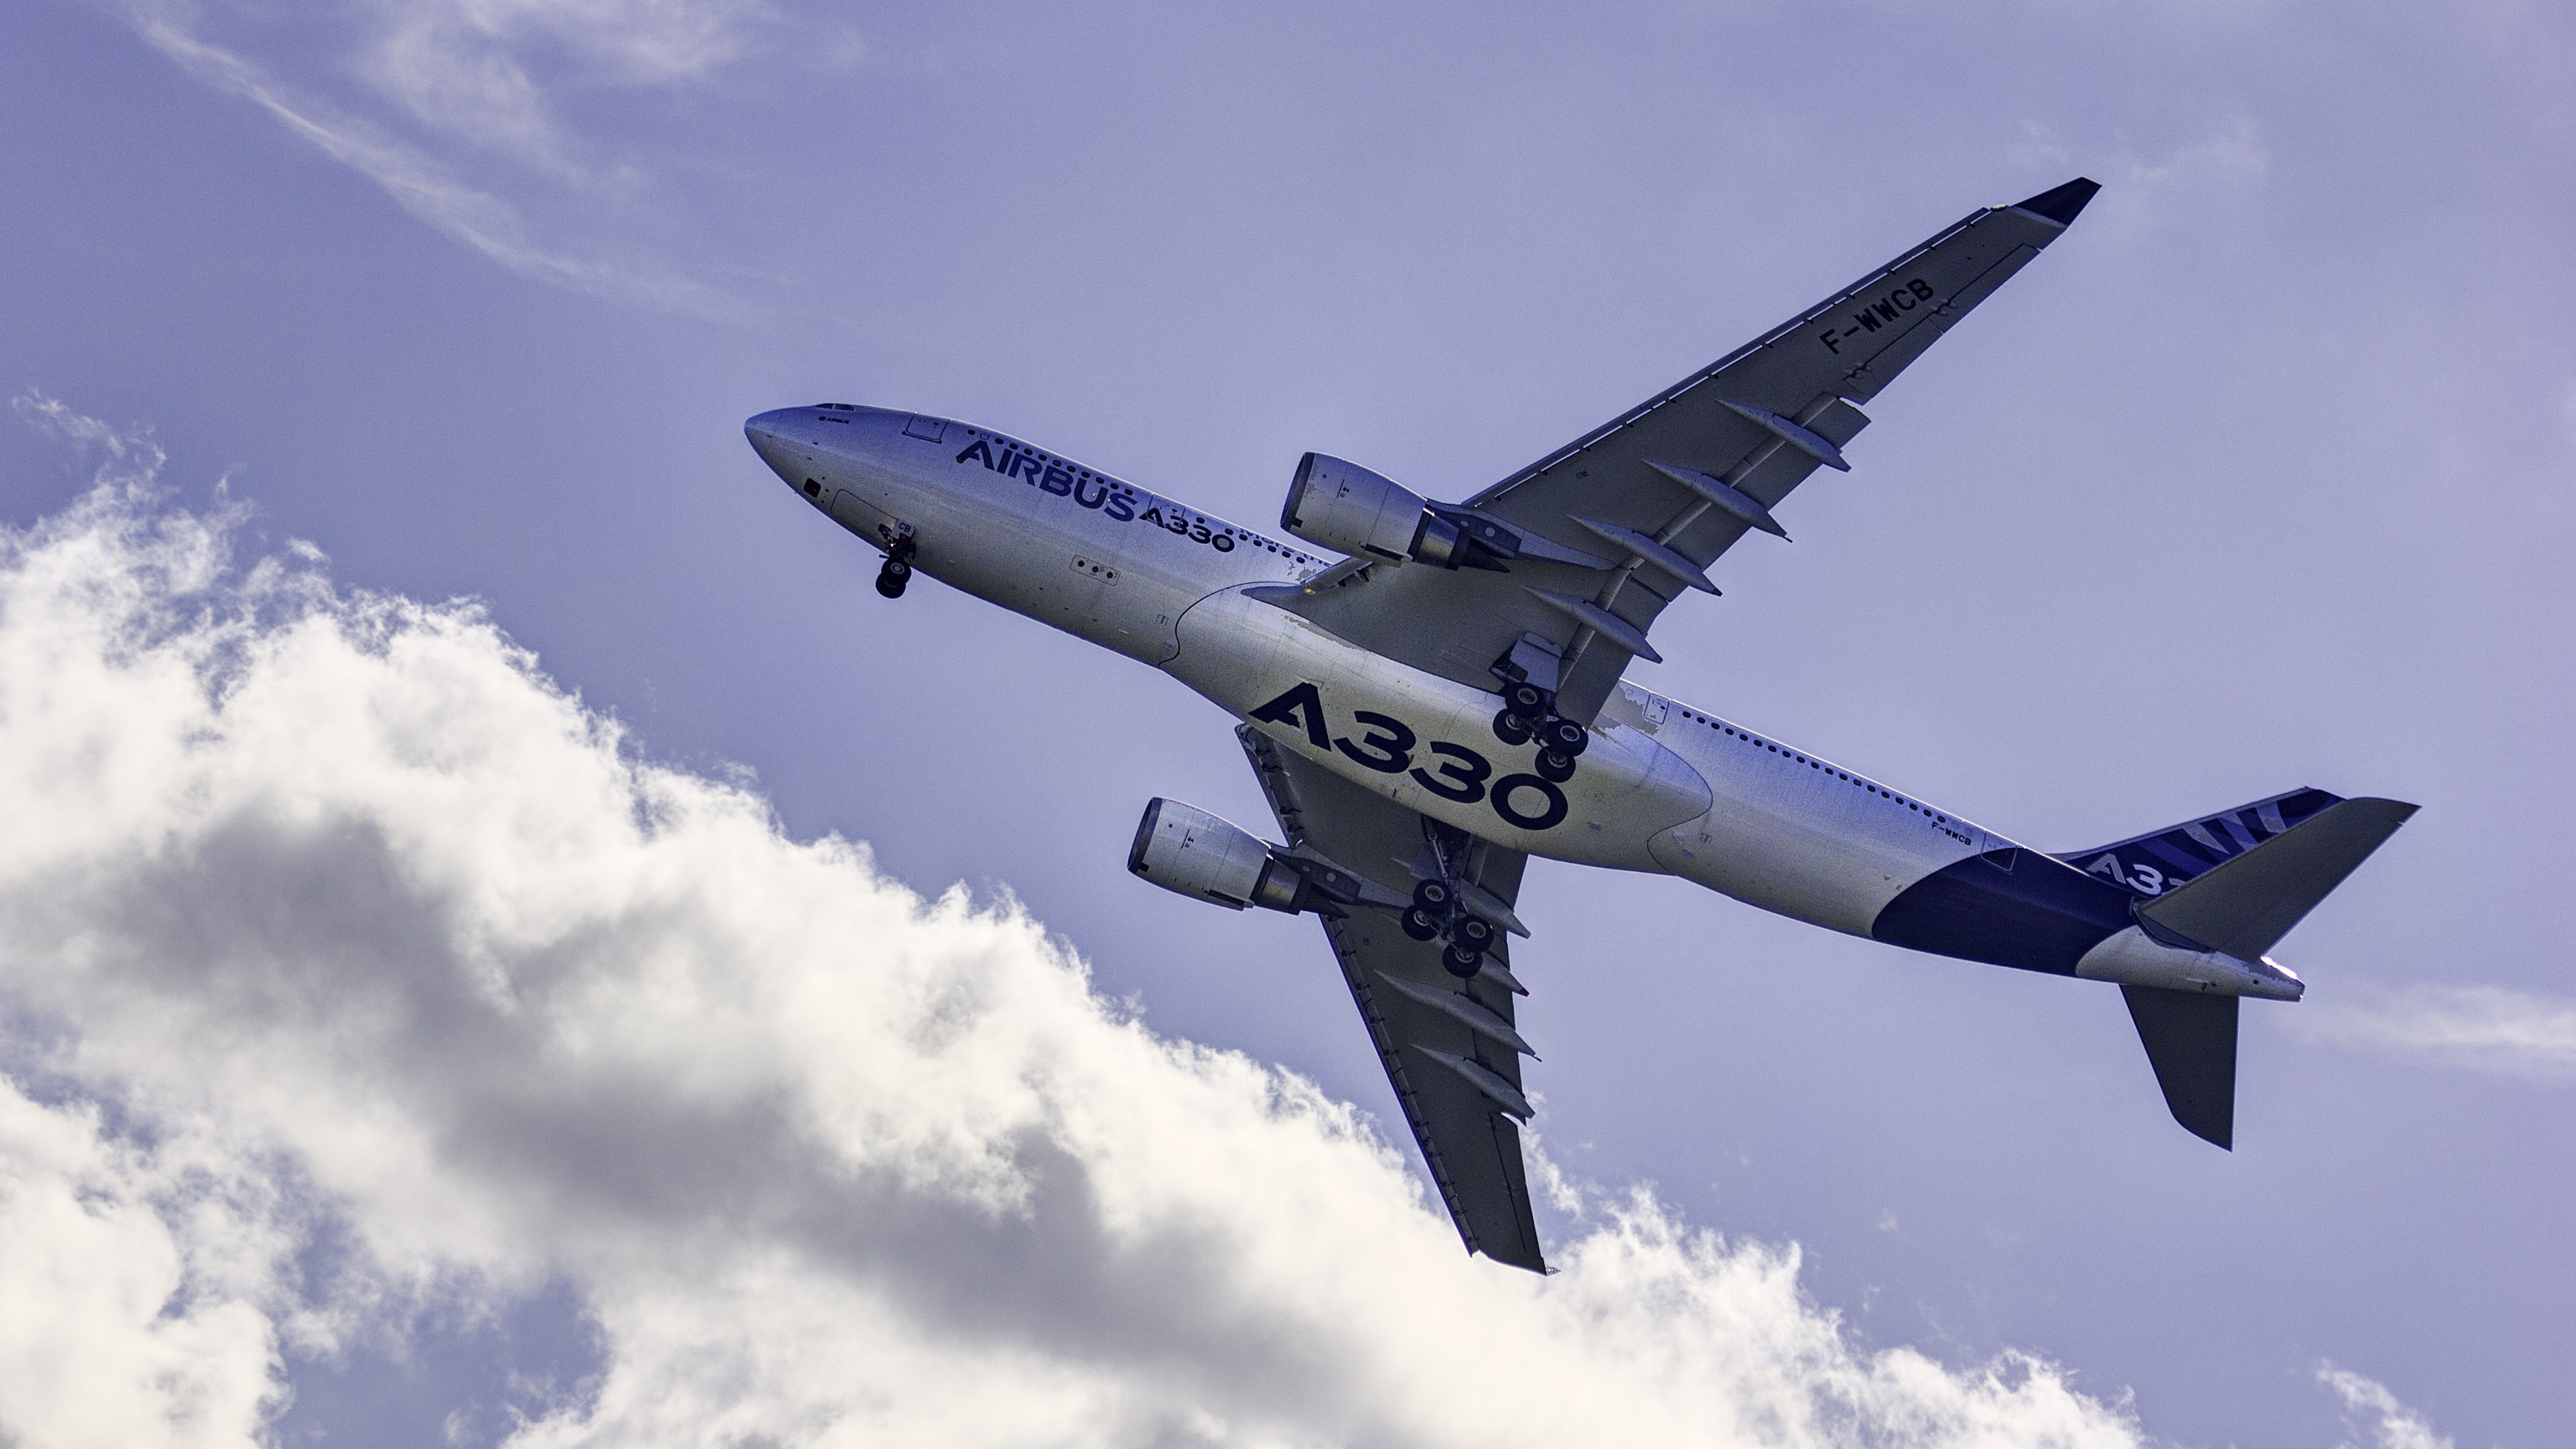 Airbus A330, Background images, Stmednet, 3840x2160 4K Desktop